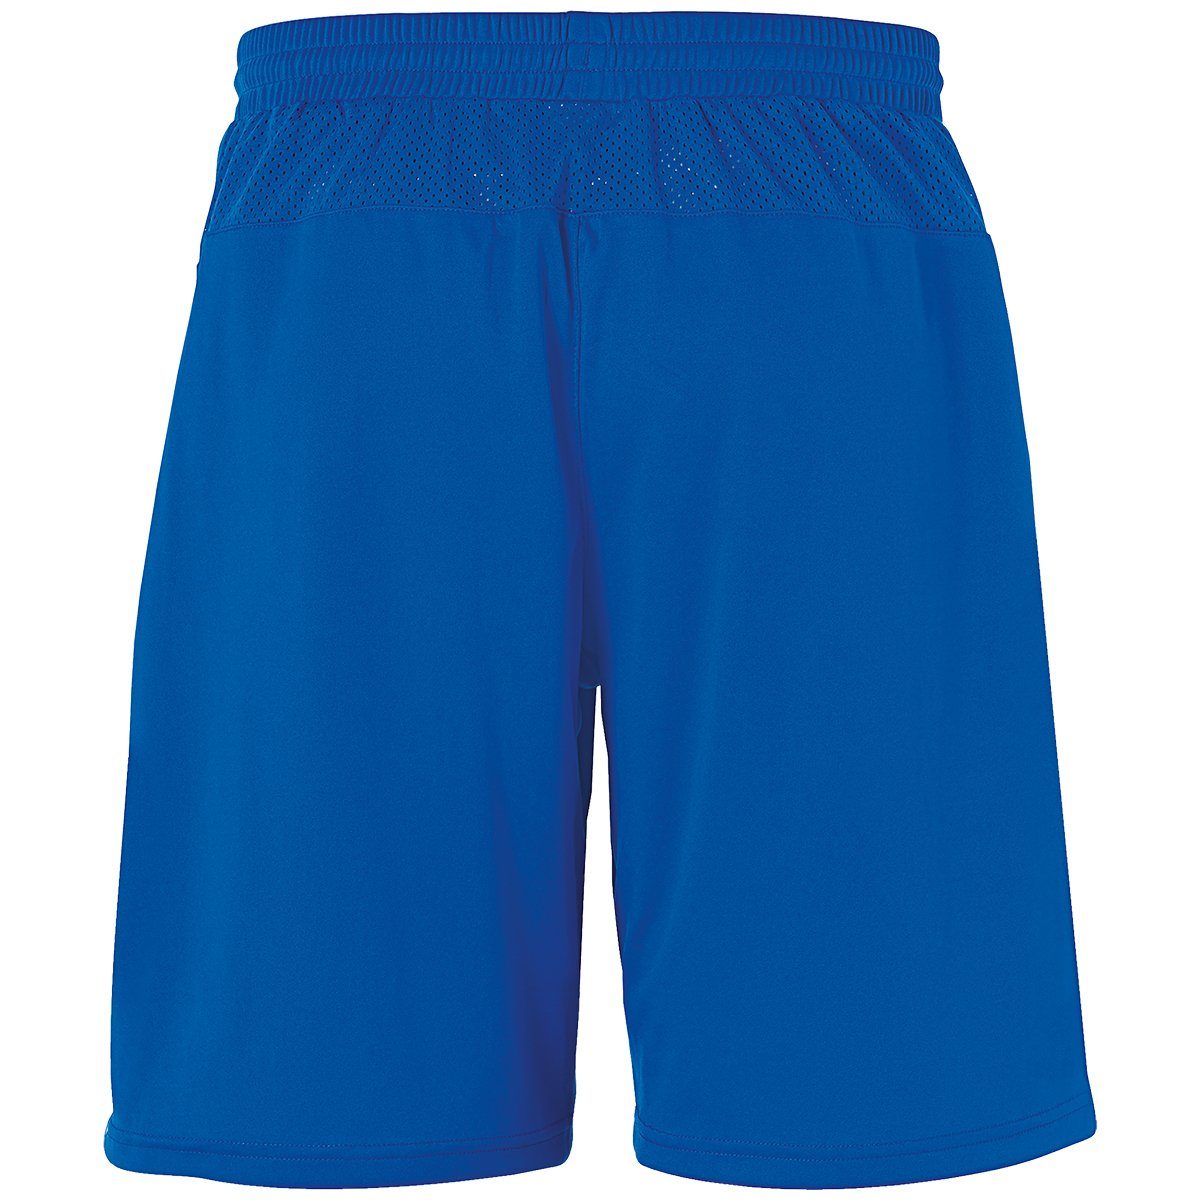 uhlsport Shorts uhlsport SHORTS PERFORMANCE azurblau/weiß Shorts